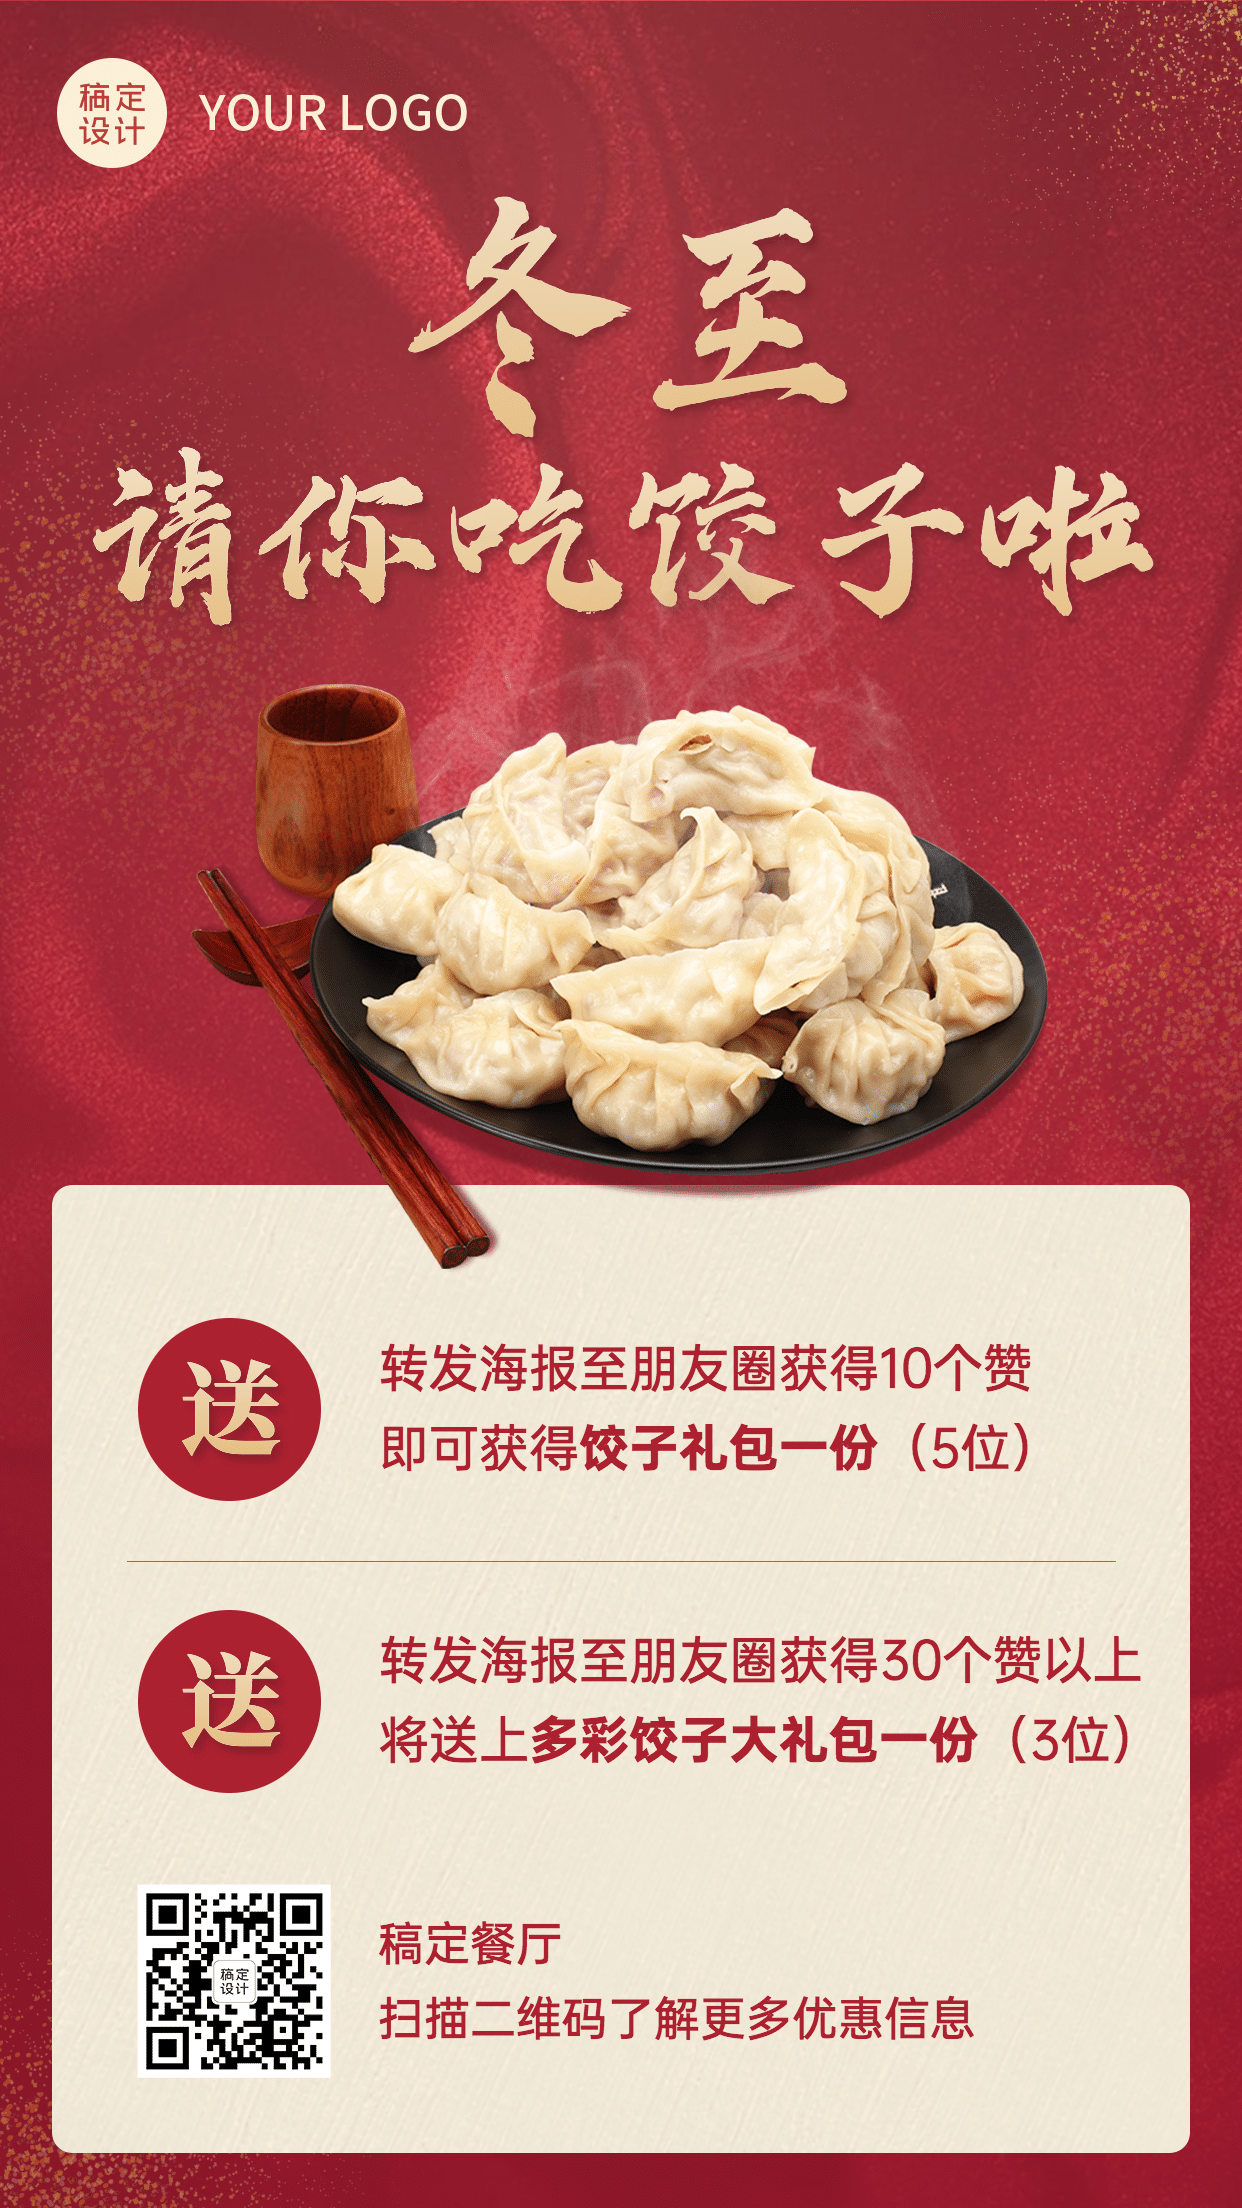 冬至节气饺子汤圆活动营销促销手机海报